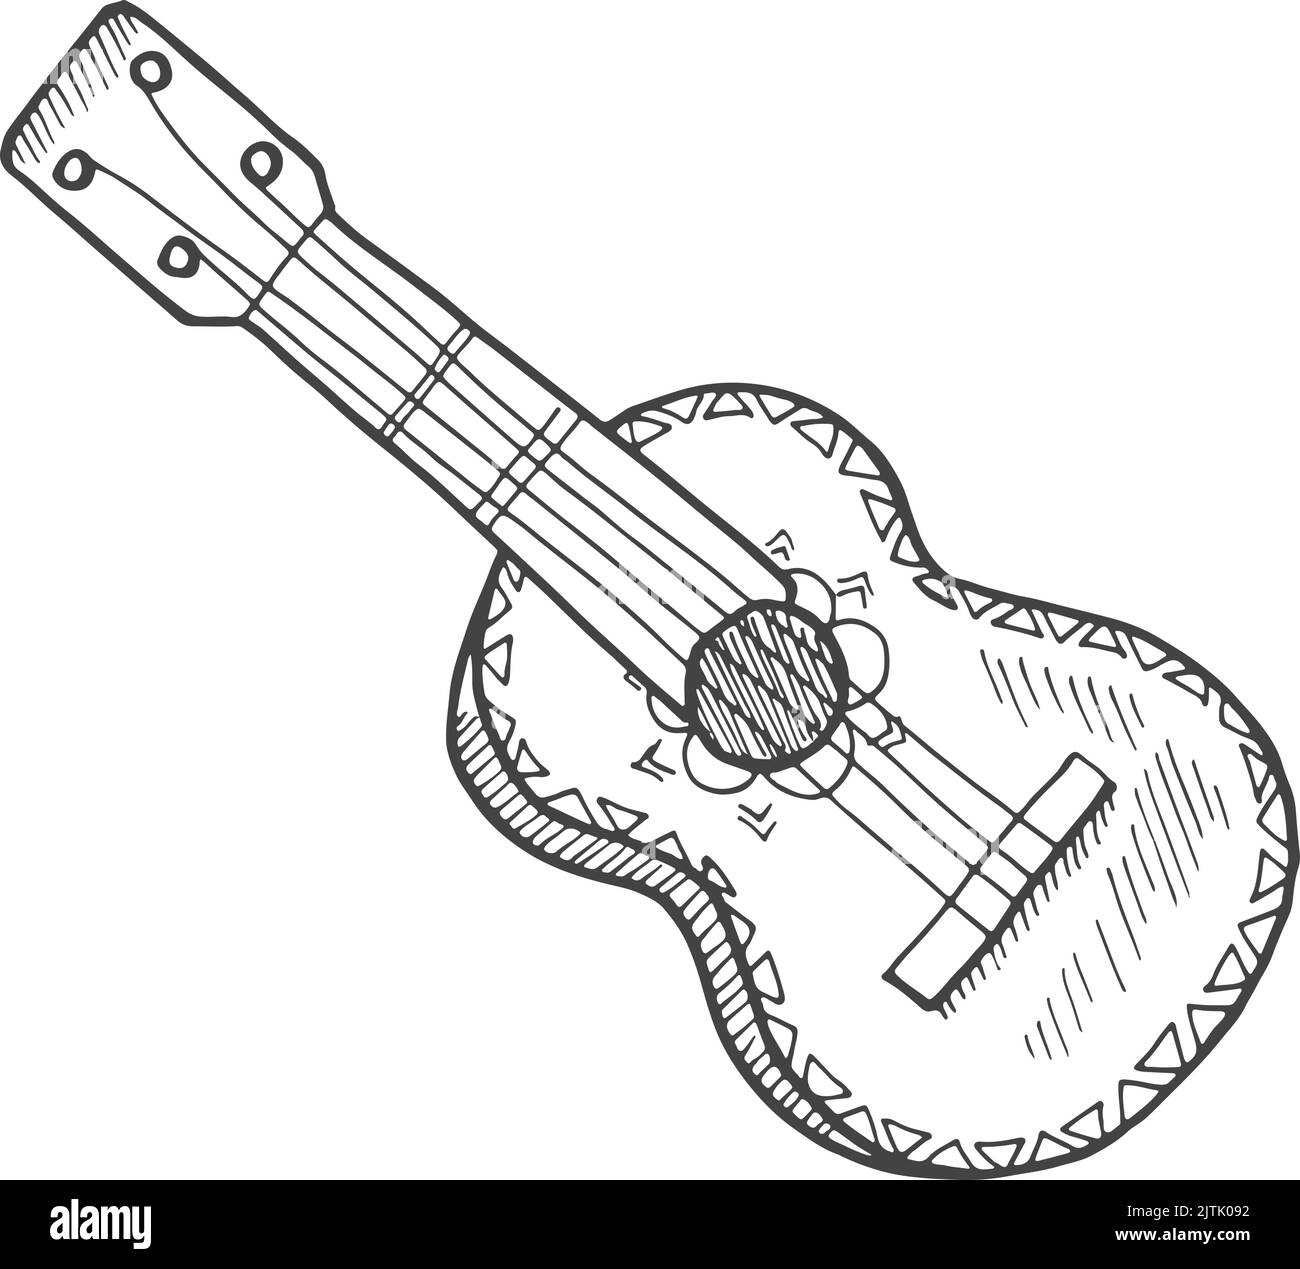 Esquisse de guitare acoustique. Instrument de musique classique dessiné à la main Illustration de Vecteur